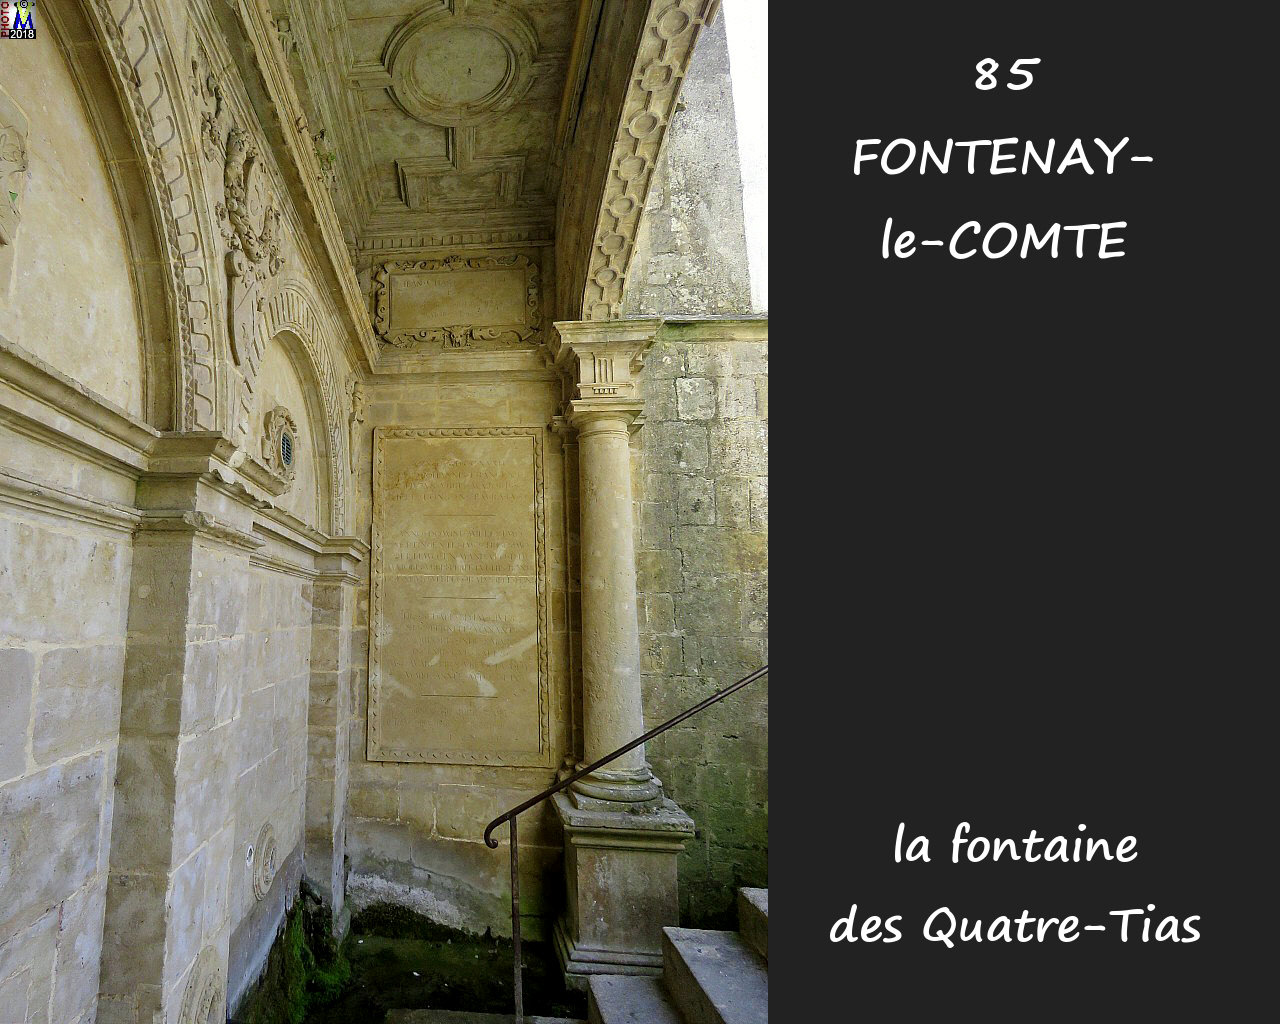 85FONTENAY-COMTE_fontaine4Tias_1008.jpg